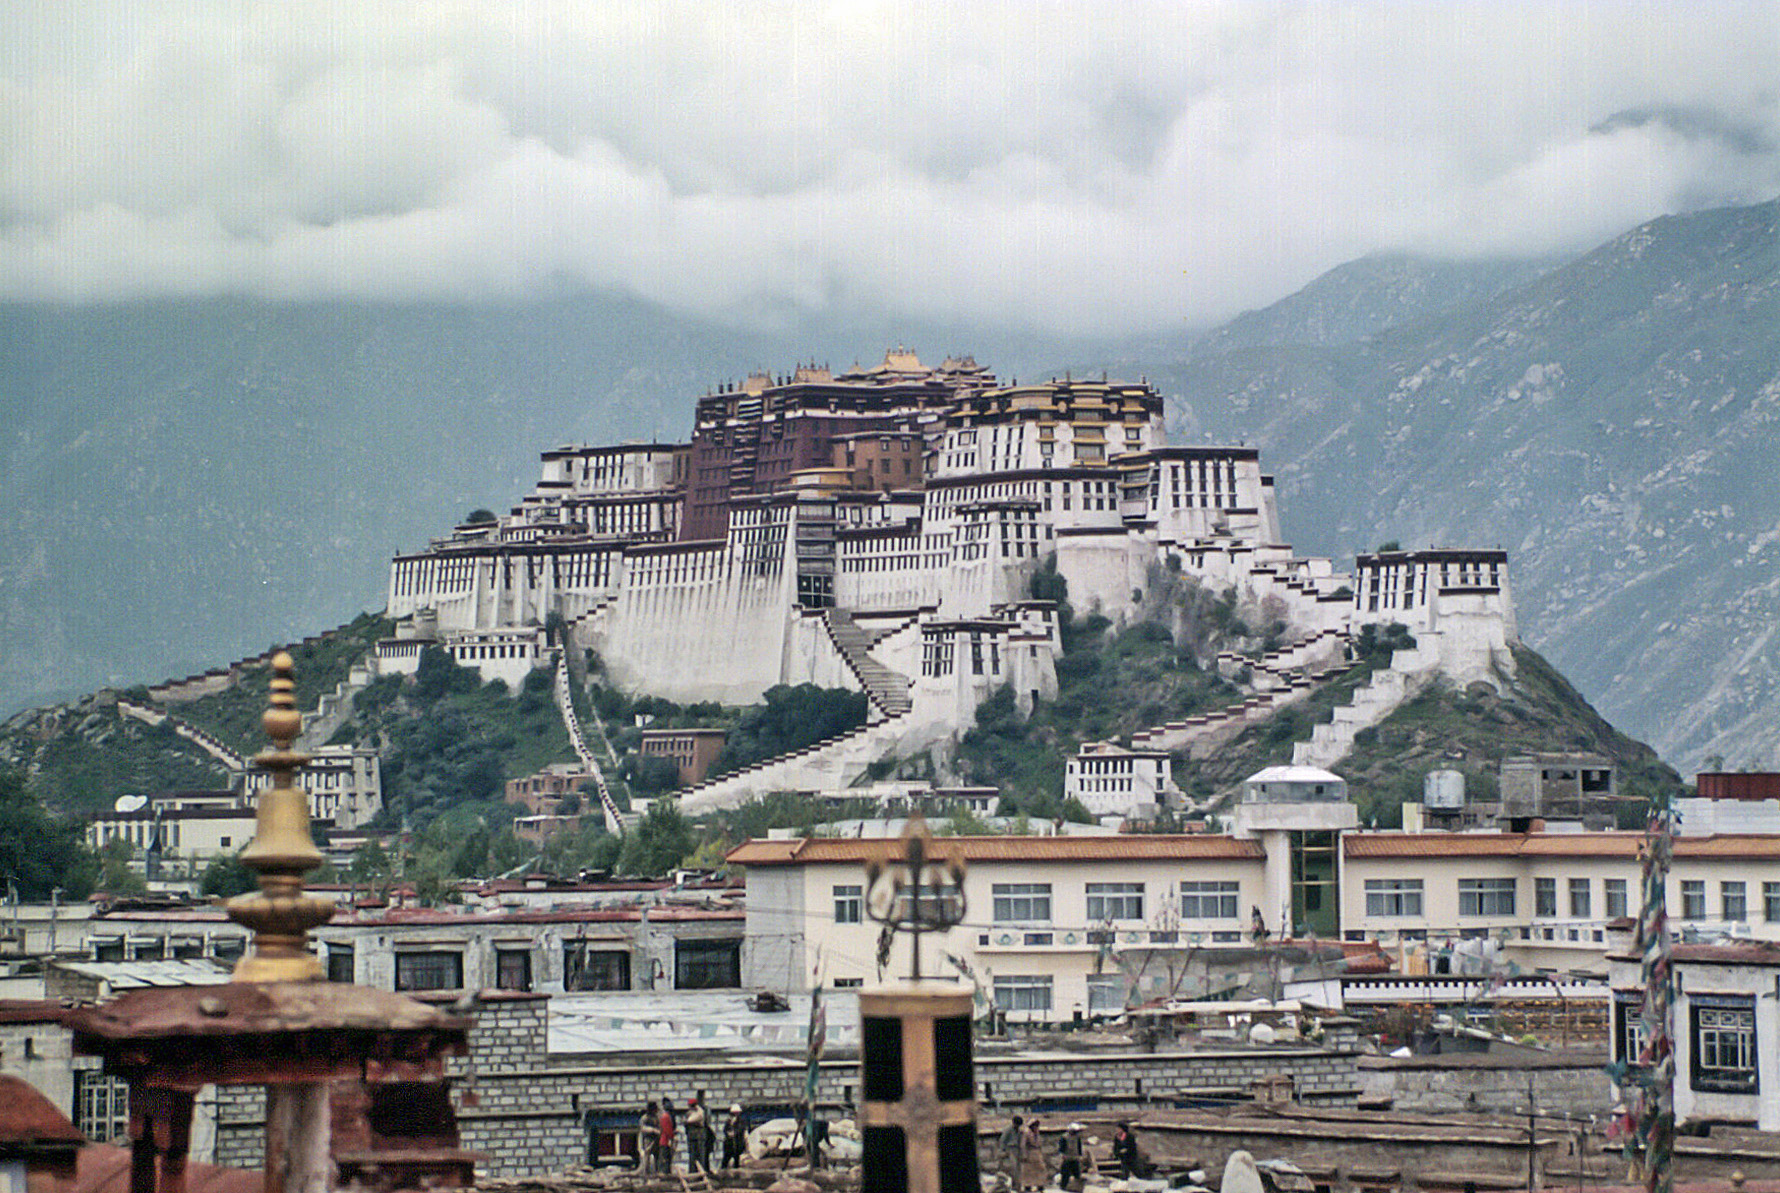 Tibet, China